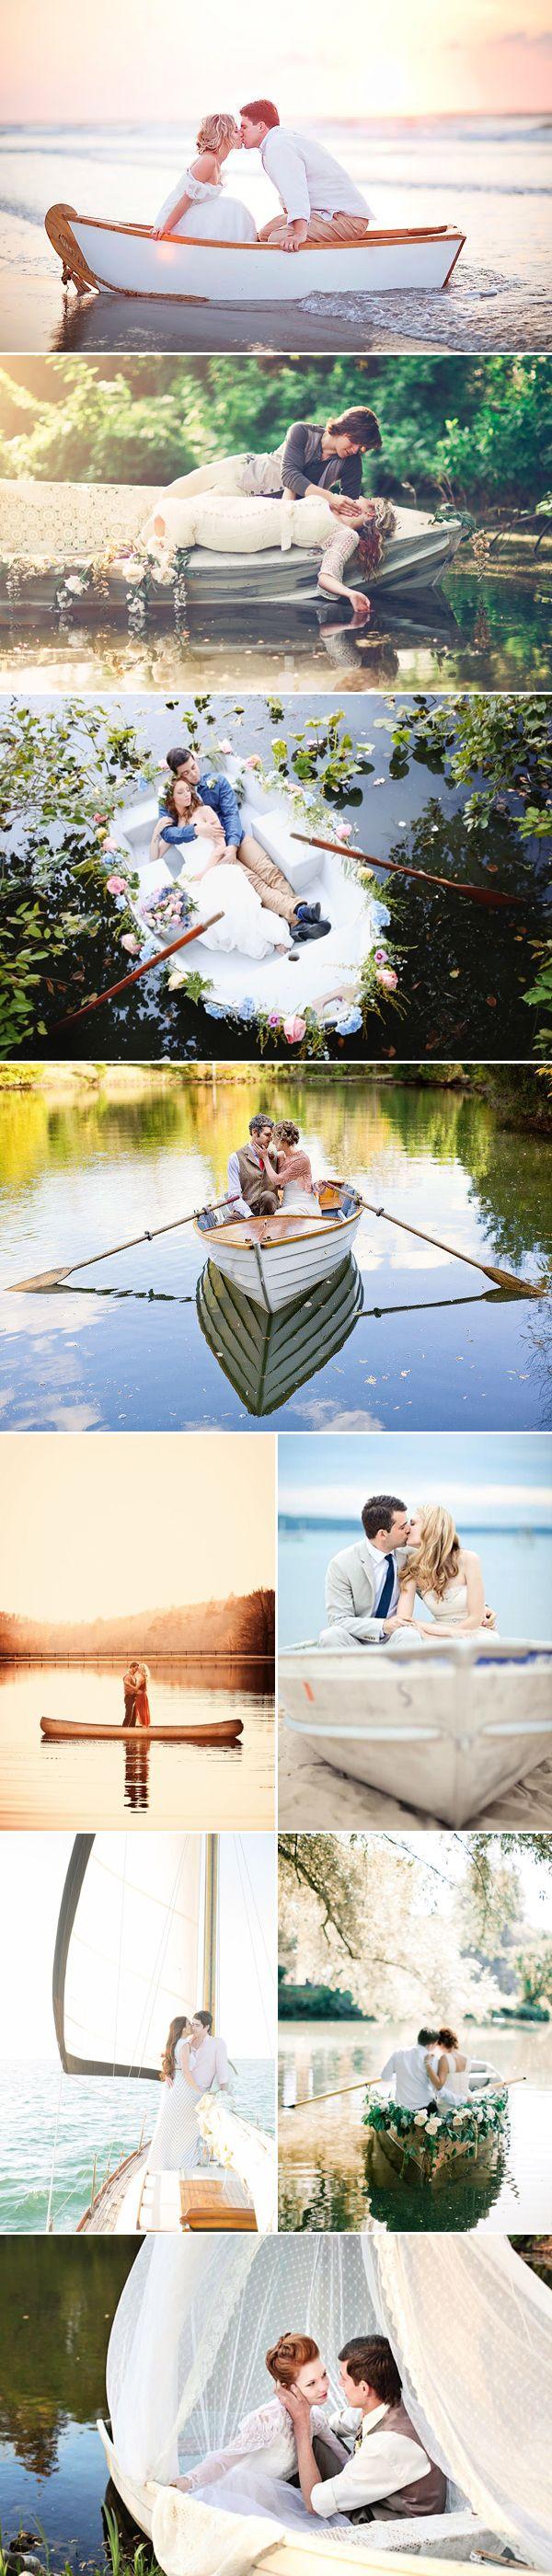 Hochzeit - Romantic Love-Boat Engagement Photo Ideas